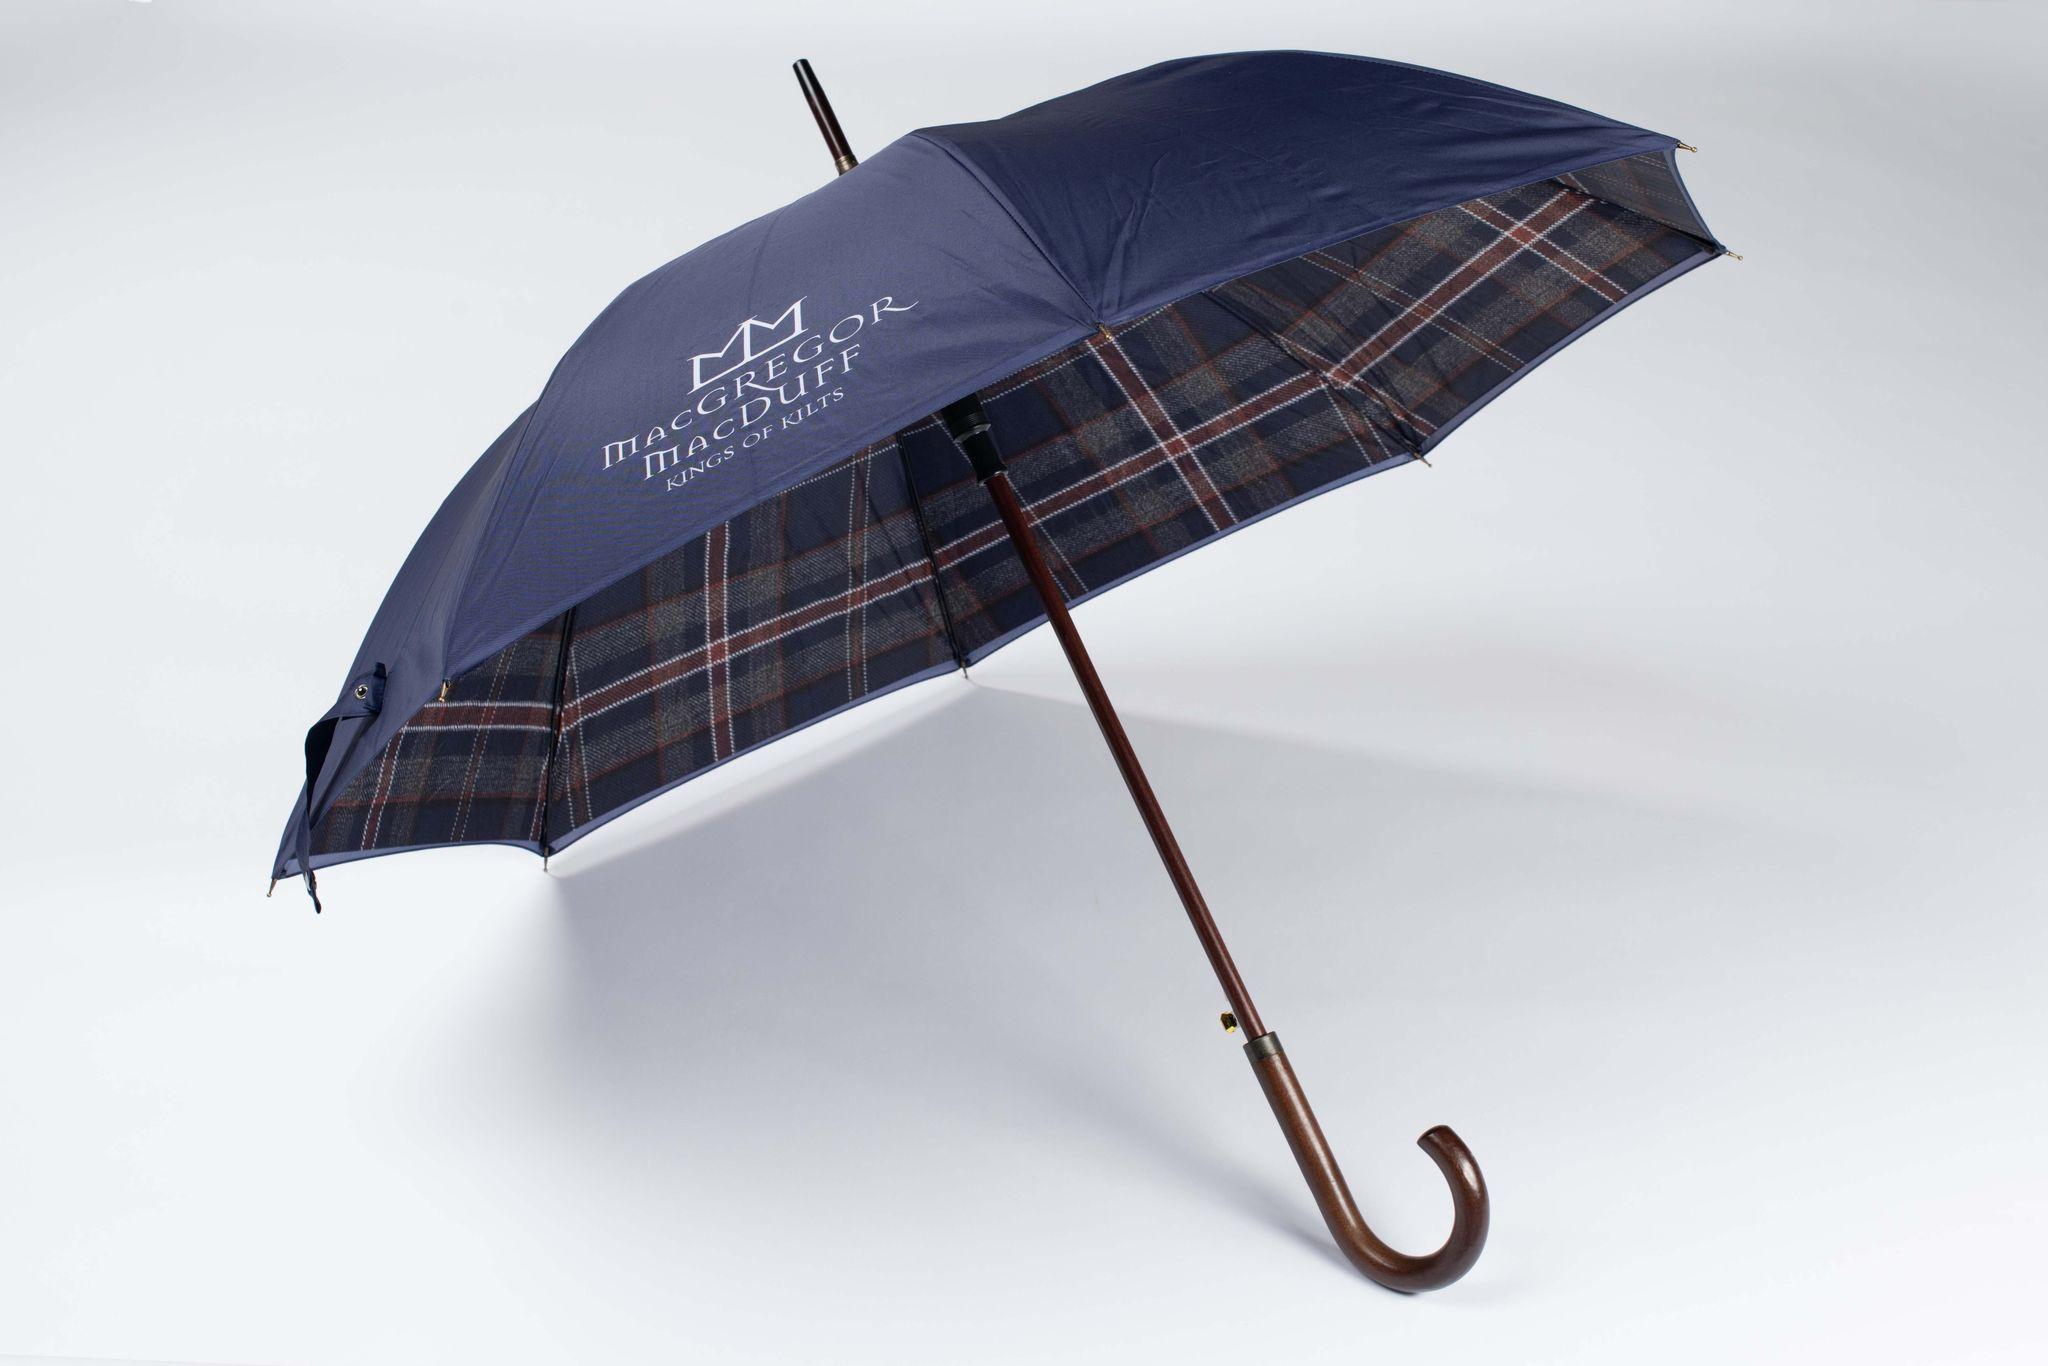 Exclusive Mist Umbrella - MacGregor and MacDuff